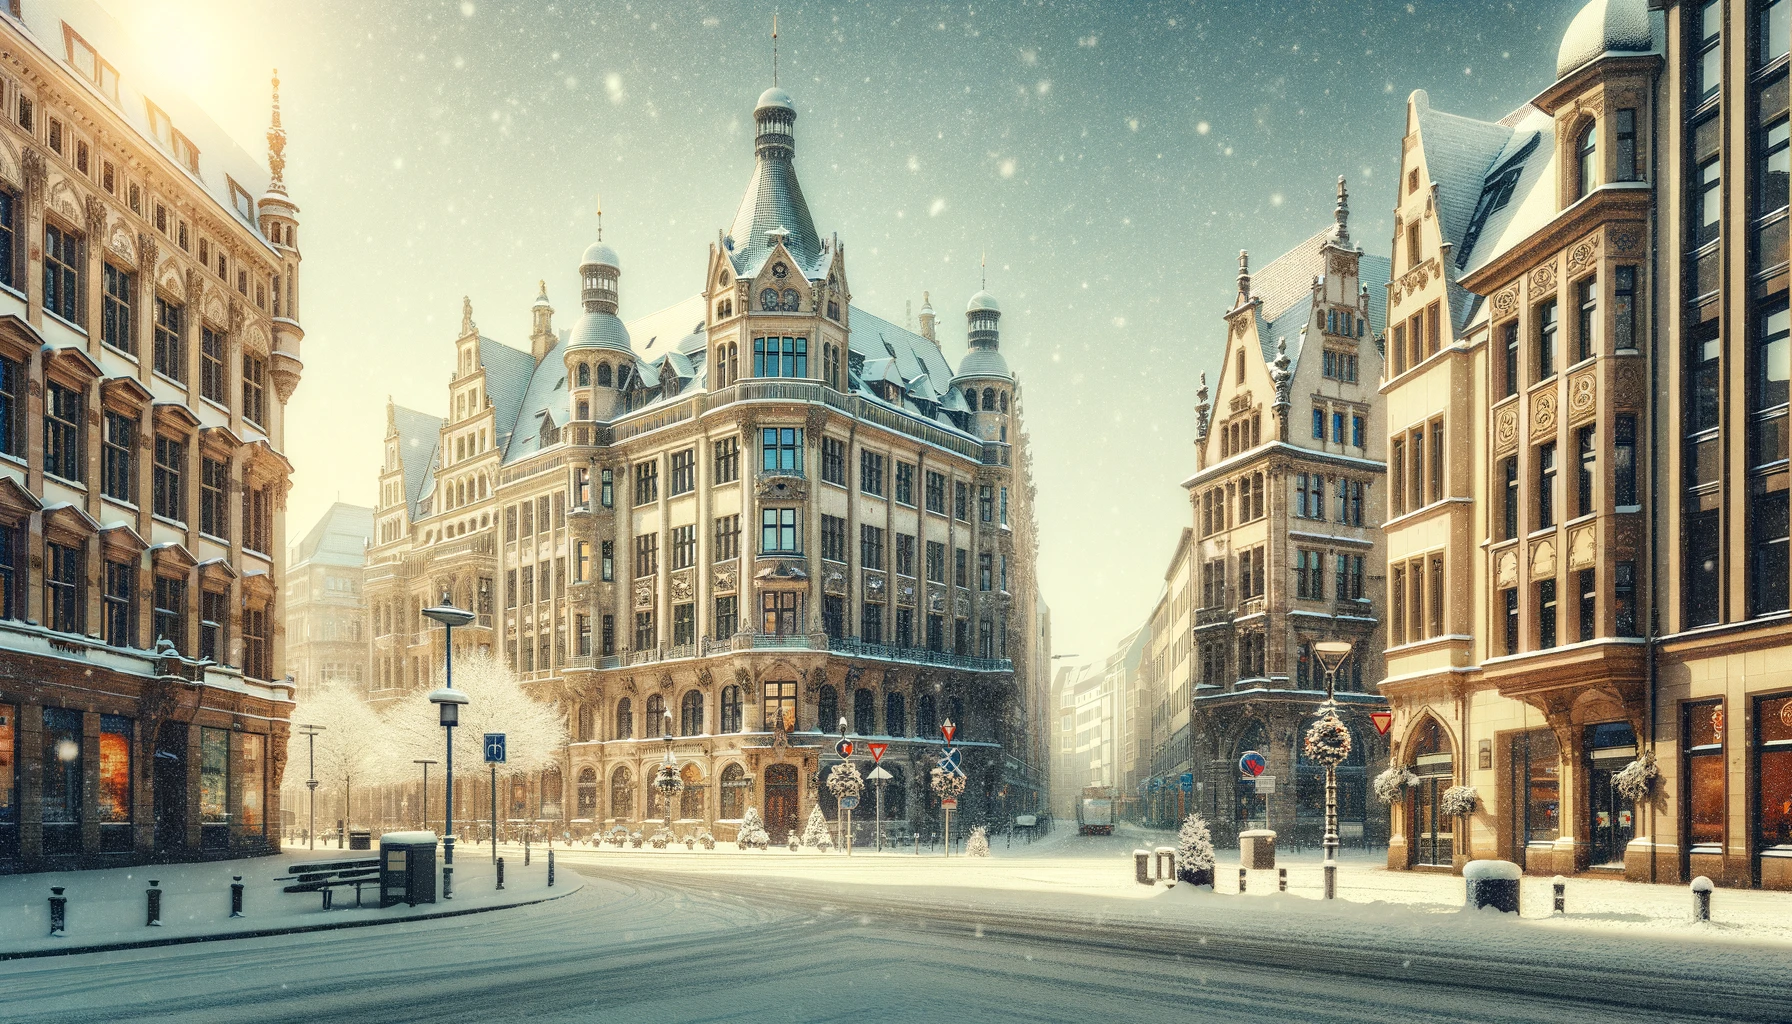 Zimowy pejzaż Lipska z pokrytymi śniegiem ulicami i zabytkową architekturą